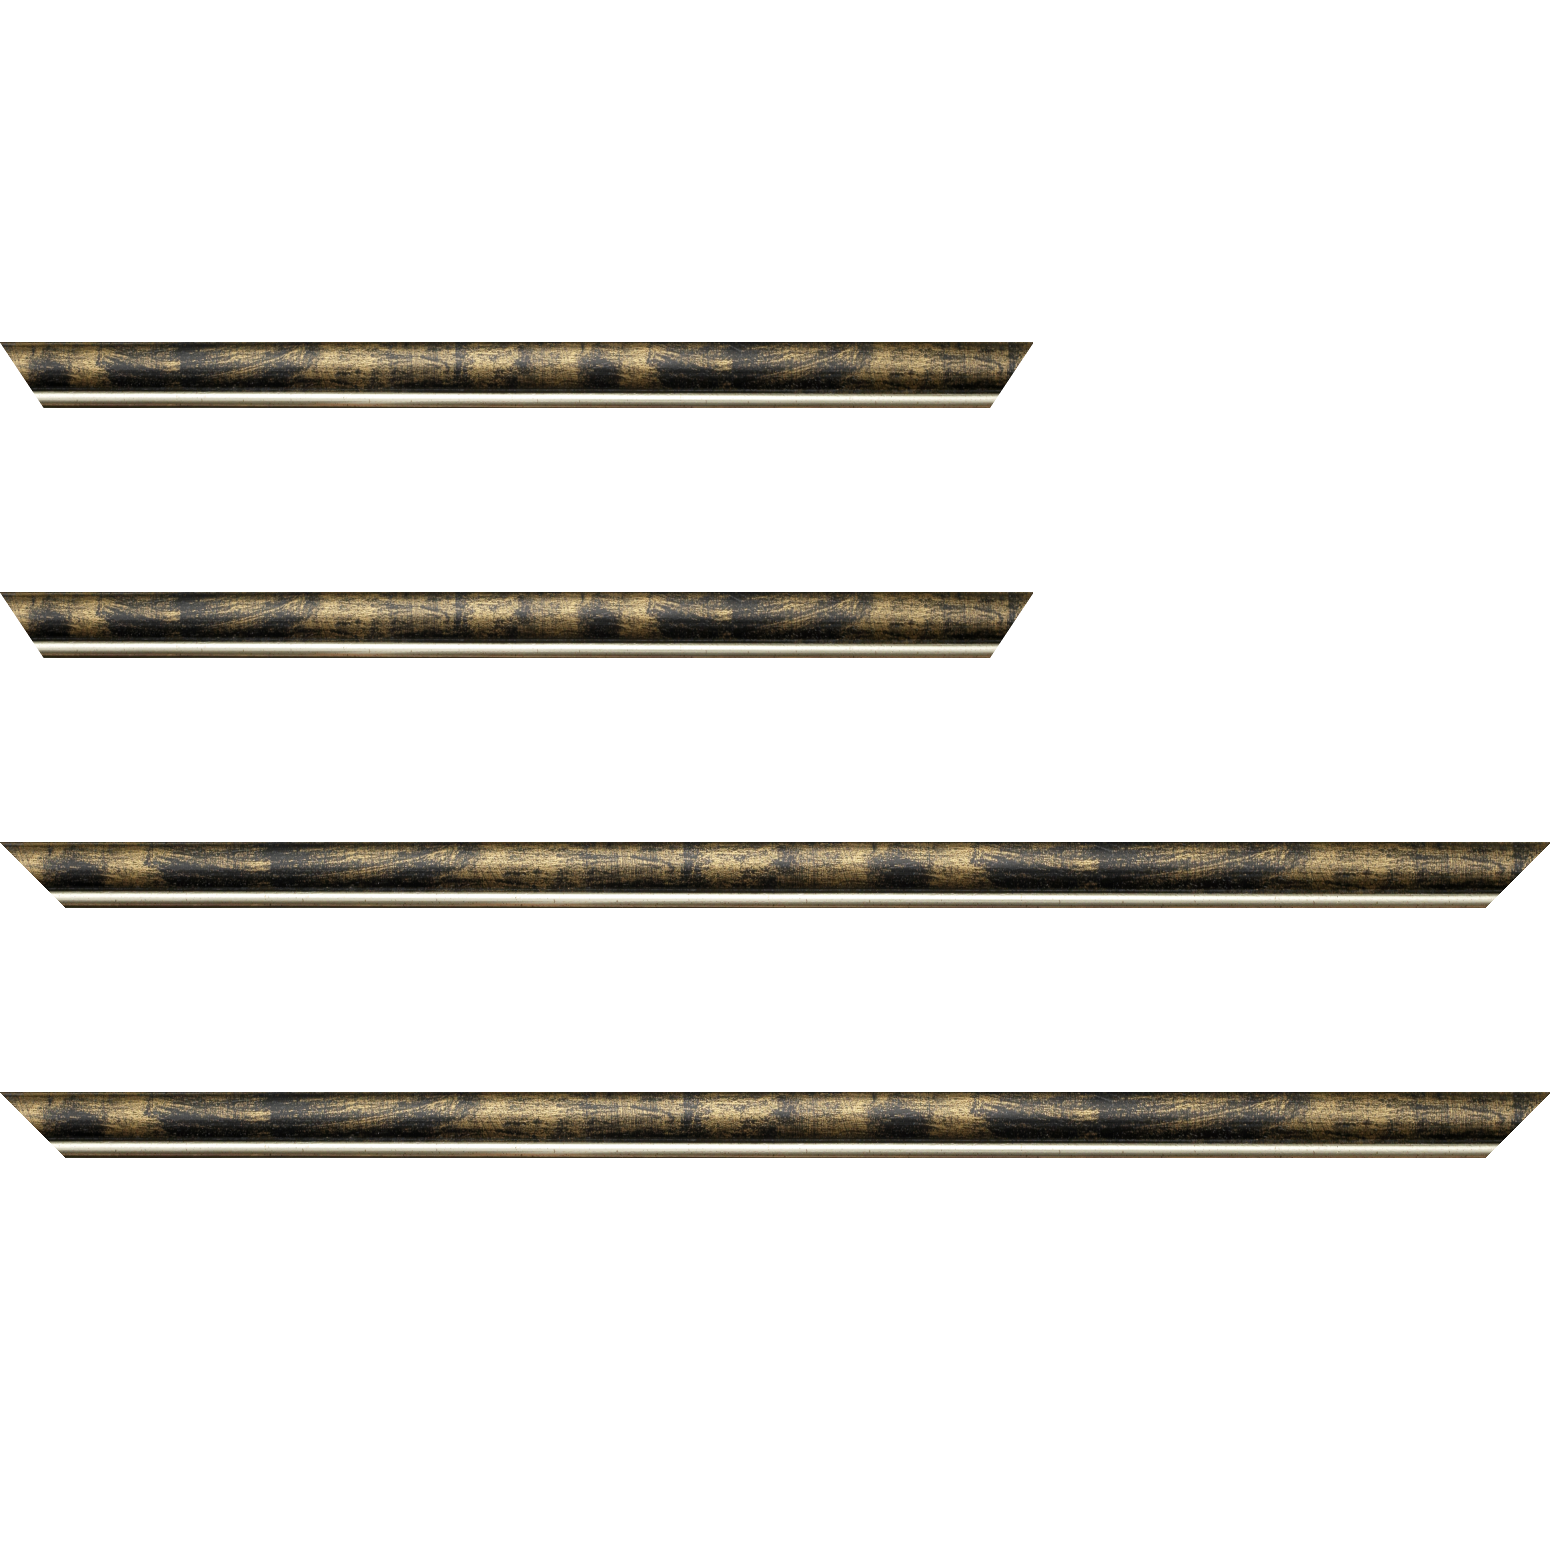 Baguette bois profil arrondi largeur 2.1cm  couleur noir fond or filet argent chaud - 24x30